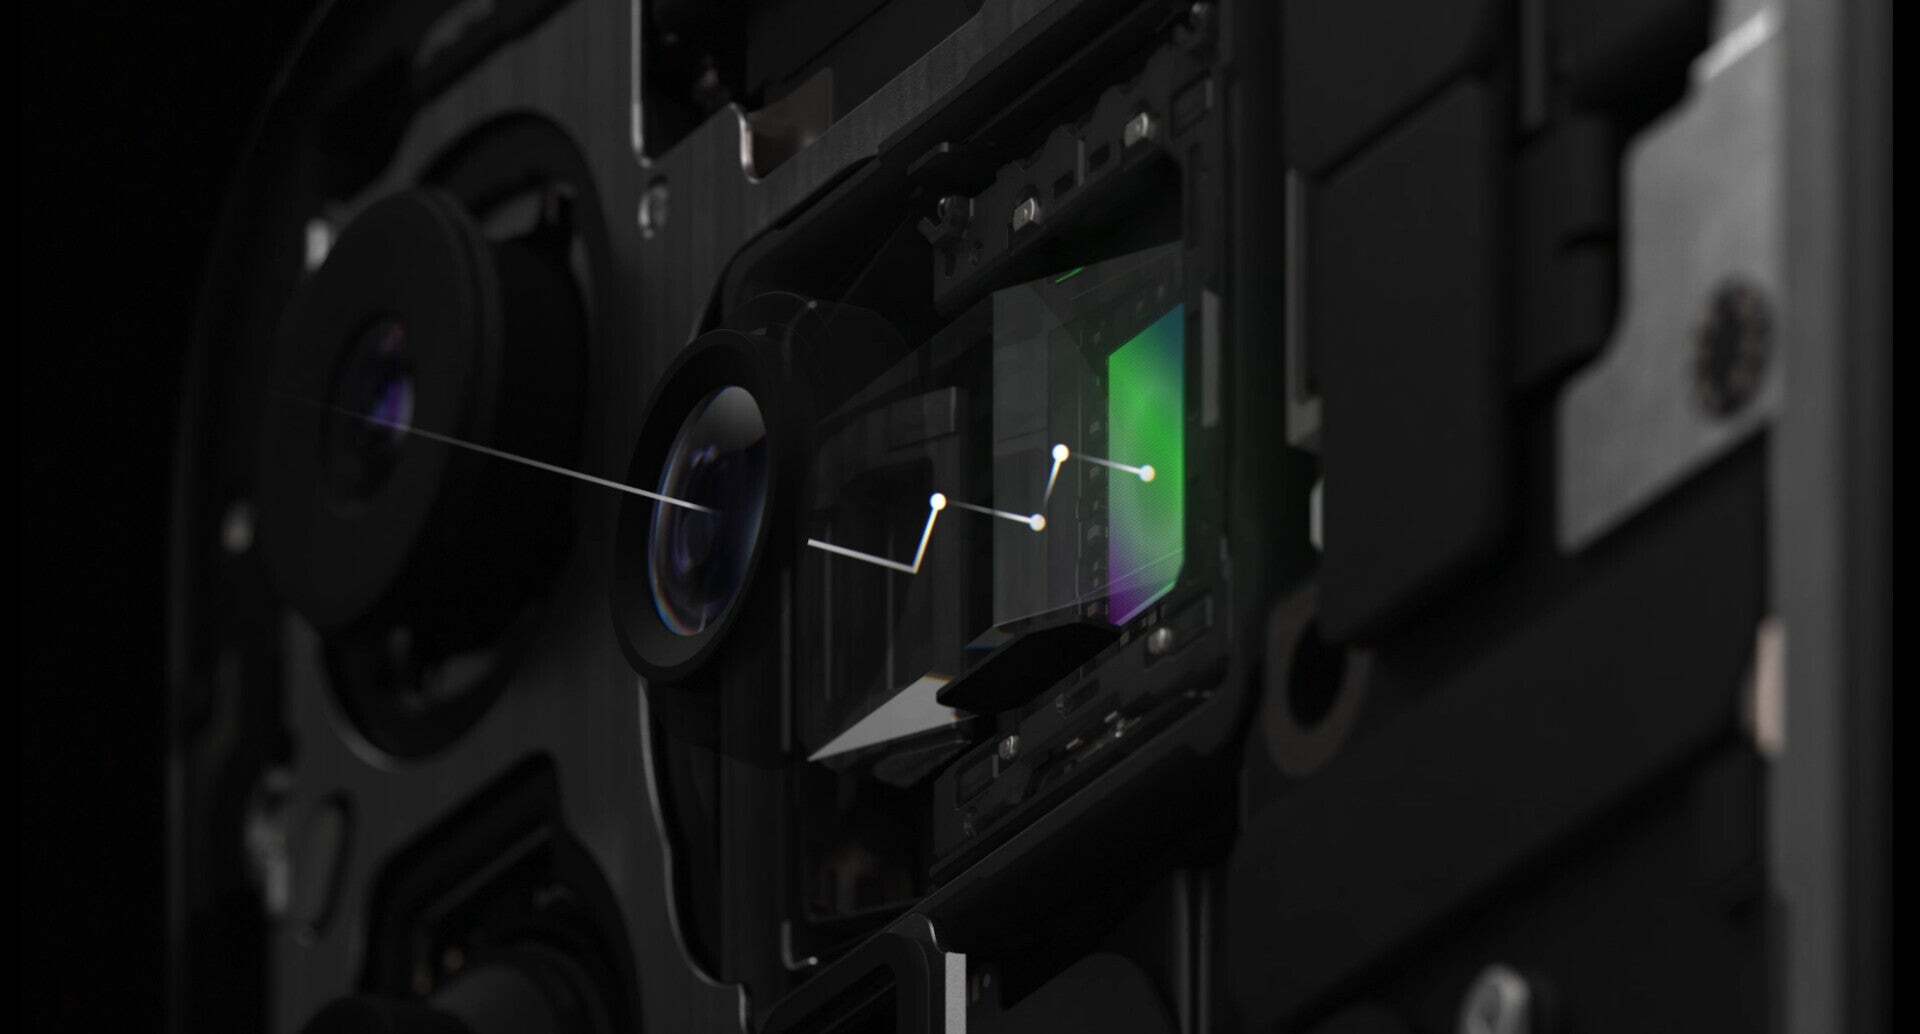 La conception Tetraprism utilise quatre prismes pour faire rebondir la lumière à travers des tubes afin d'atteindre le capteur d'image - Une caméra Tetraprism pour l'iPhone 16 Pro est désormais plus probable, selon un analyste de haut niveau.